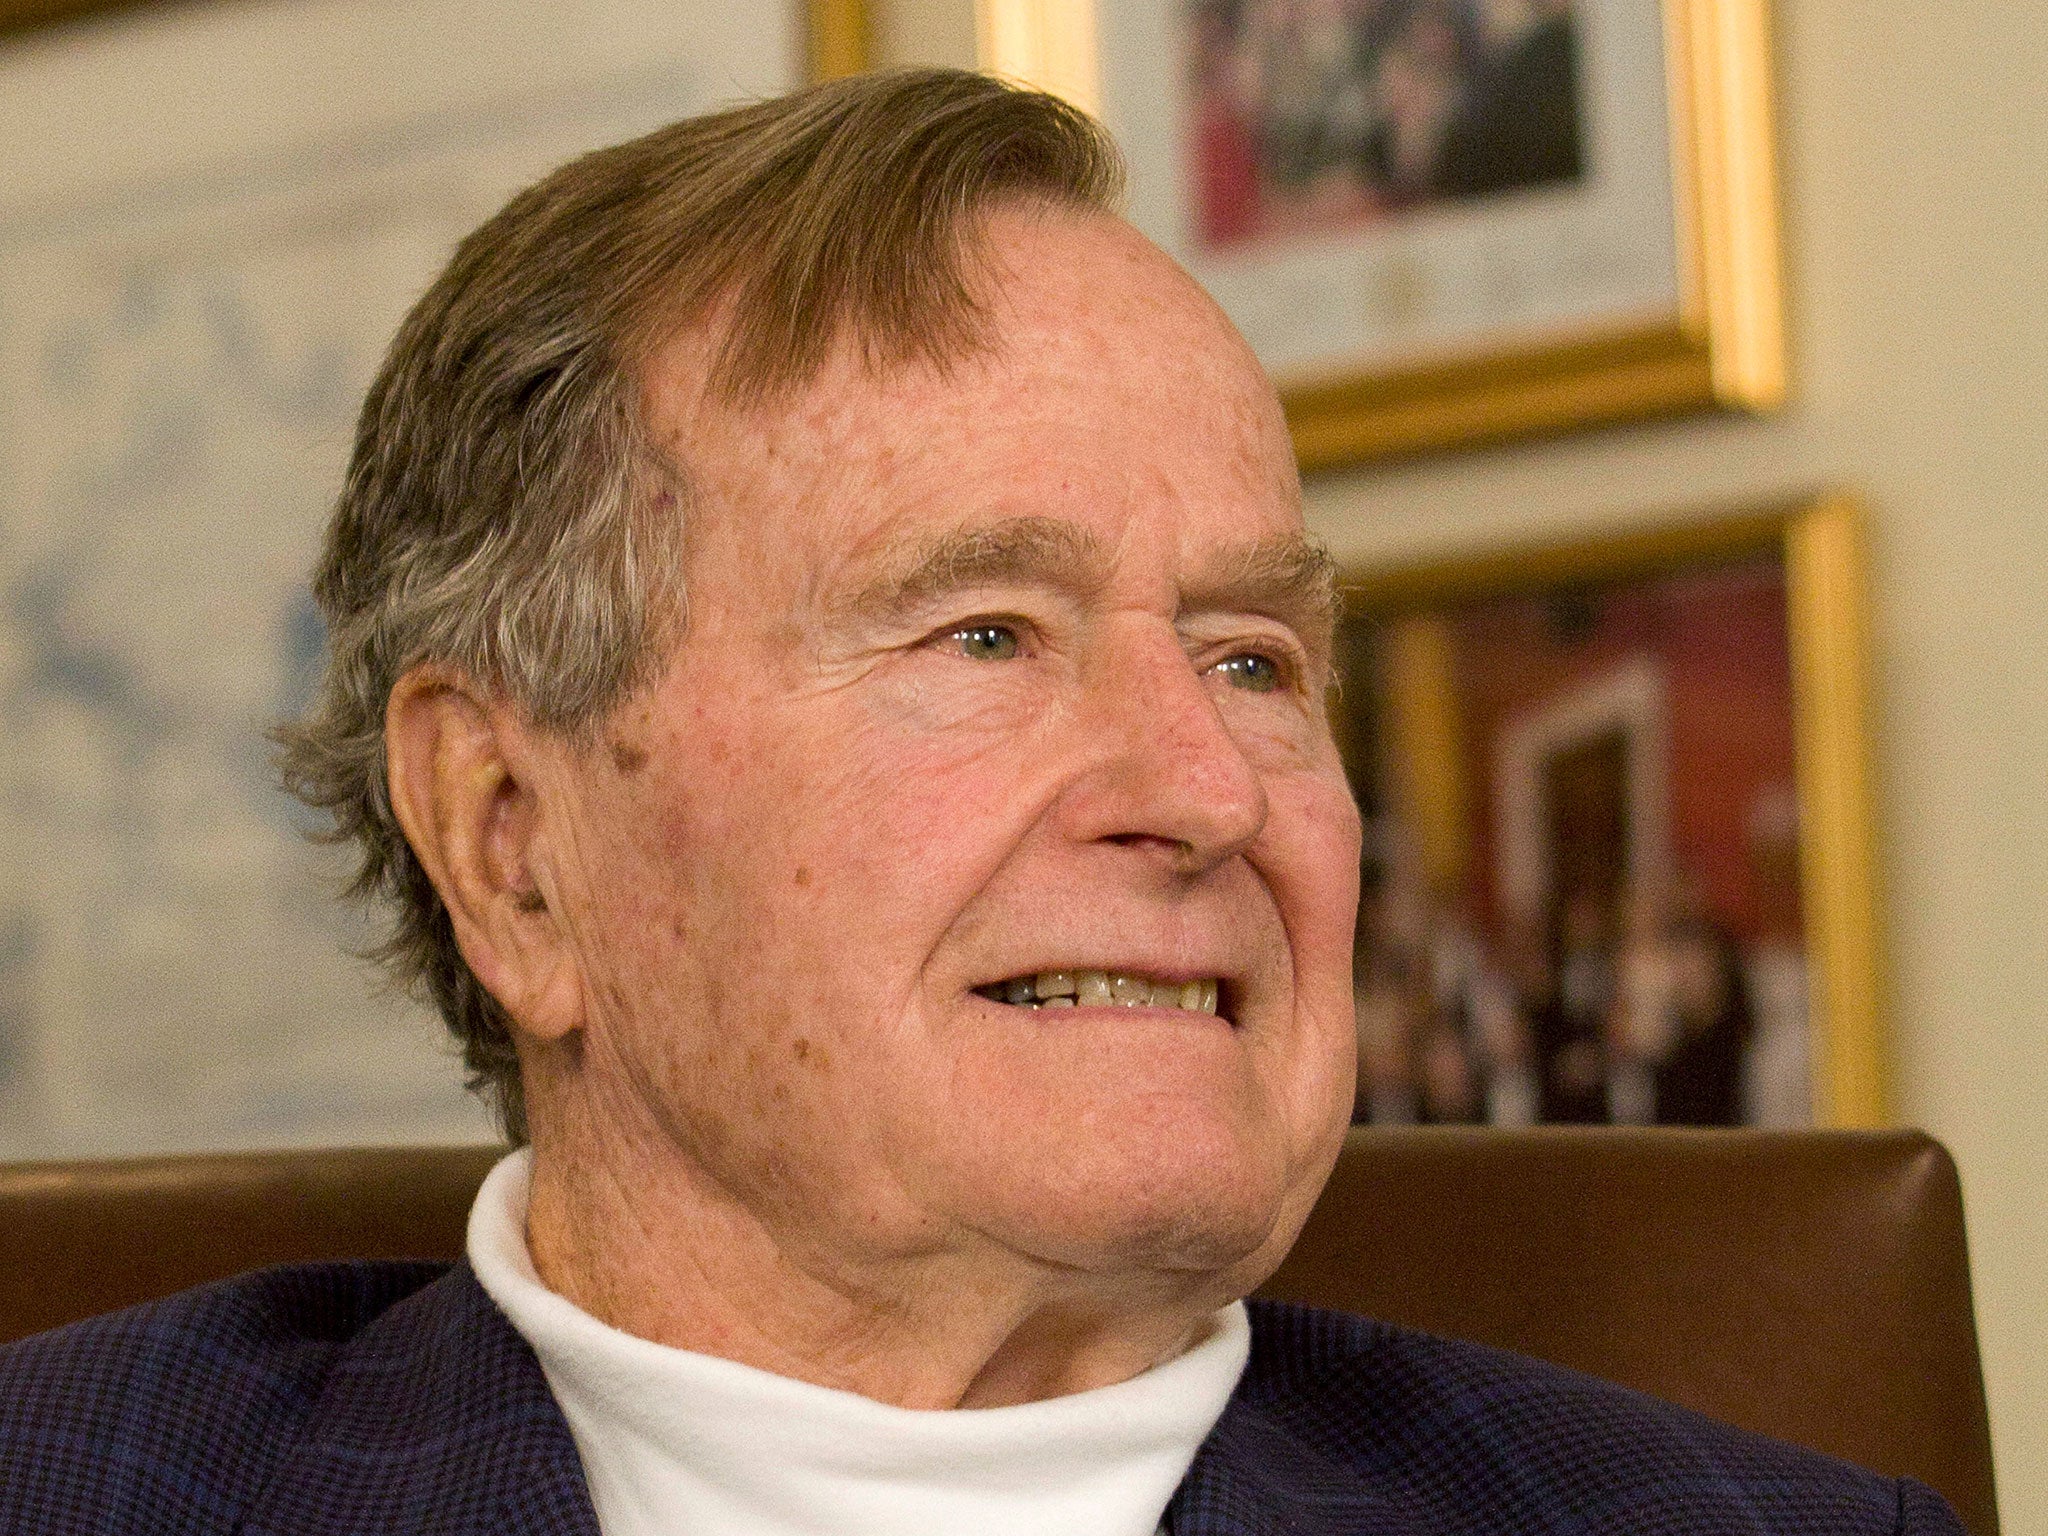 Former President George HW Bush smiles listening to Mitt Romney speak in Houston in 2012